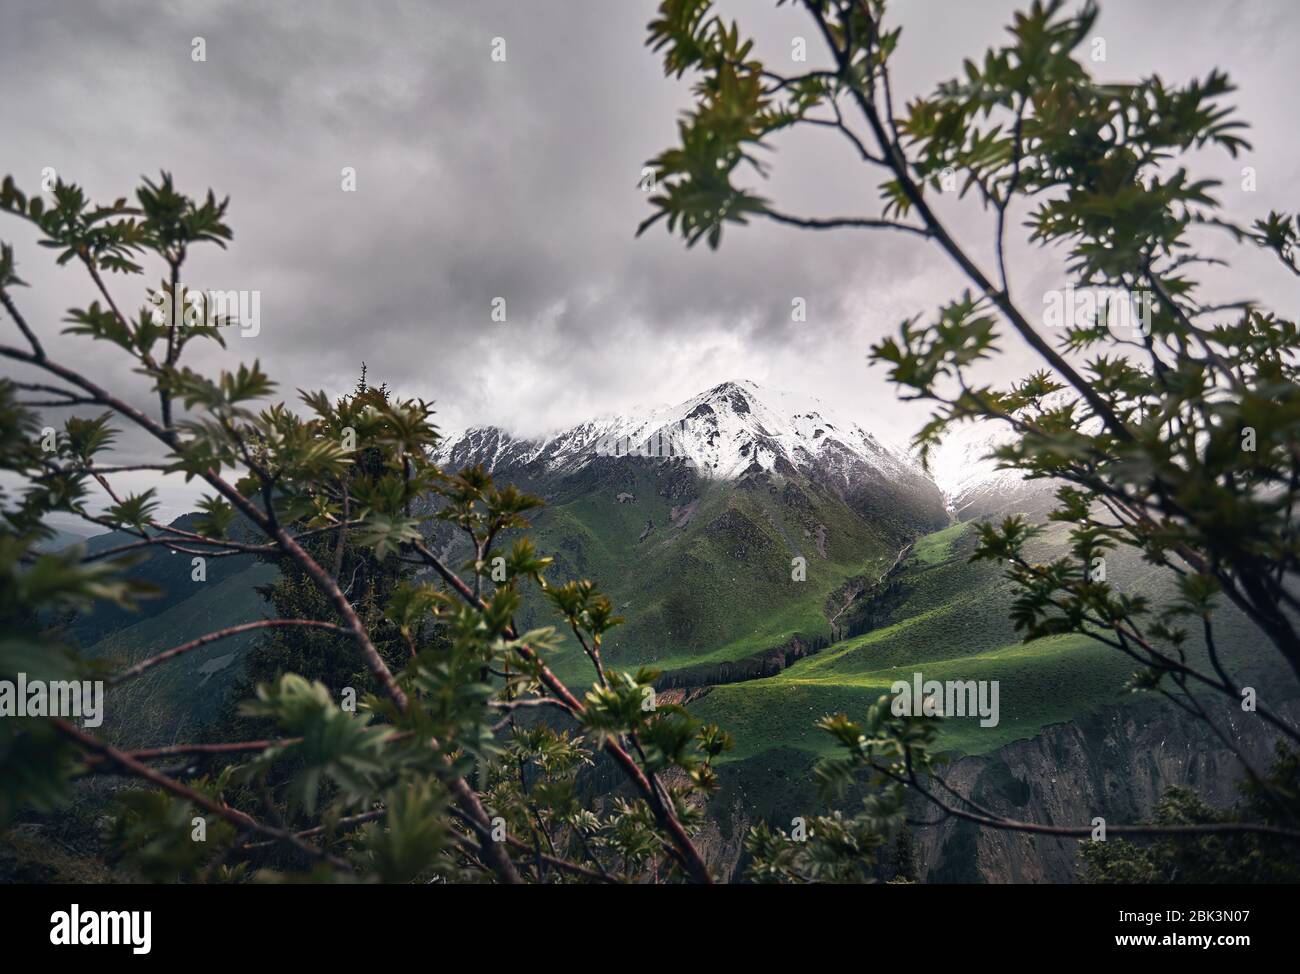 El pico de la montaña con nieve en foggy día nublado con árboles en primer plano Foto de stock